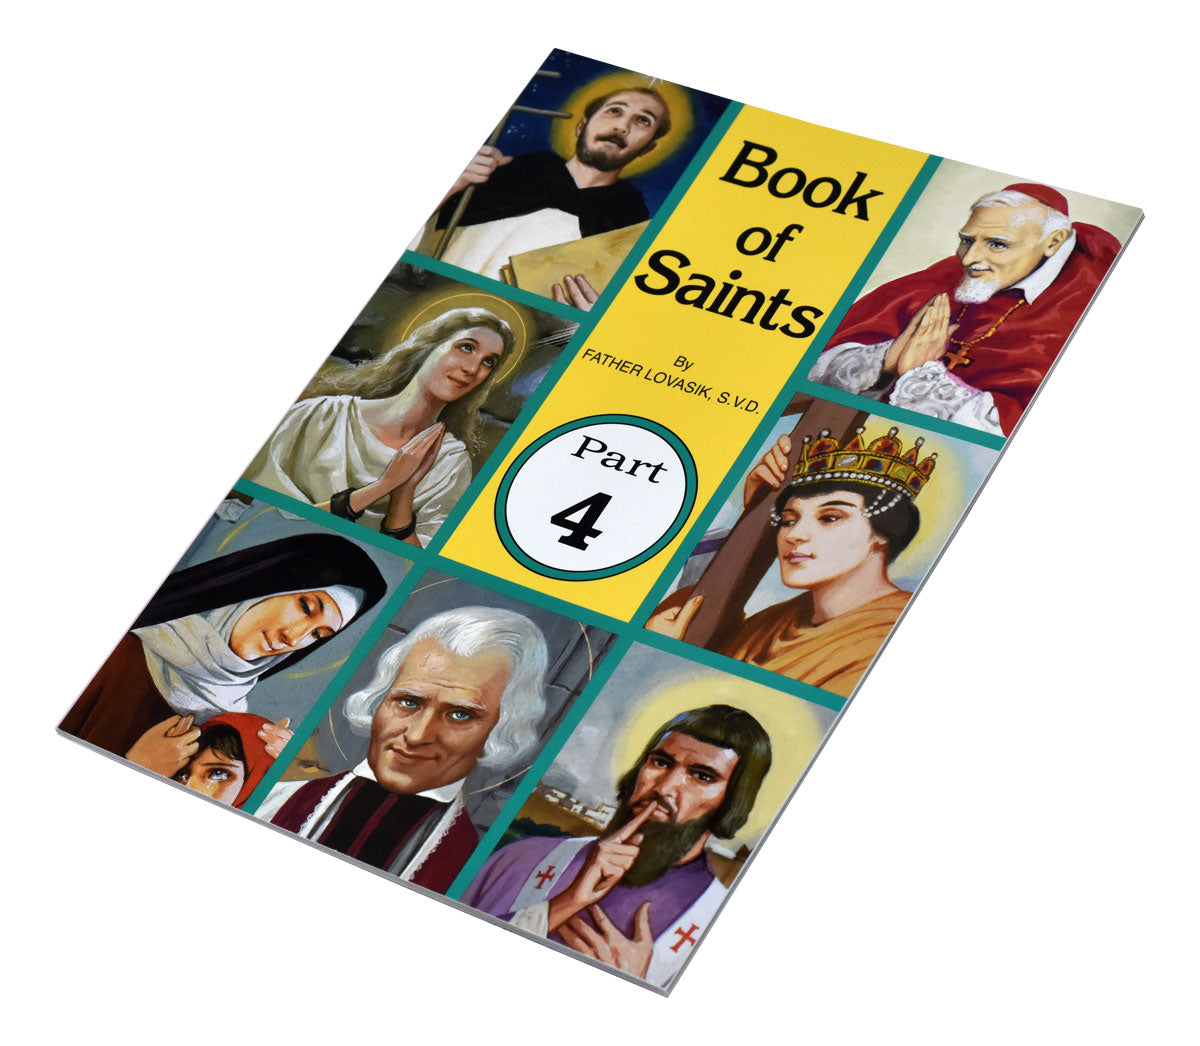 Book Of Saints (Part 4)